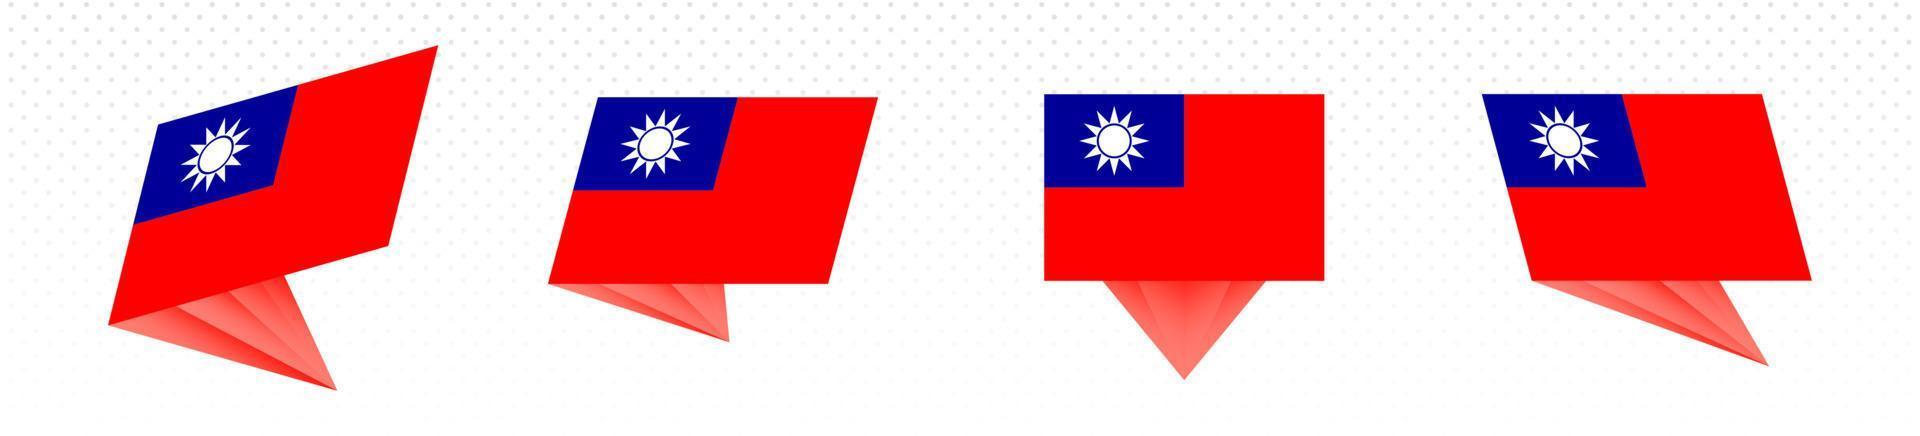 vlag van Taiwan in modern abstract ontwerp, vlag set. vector